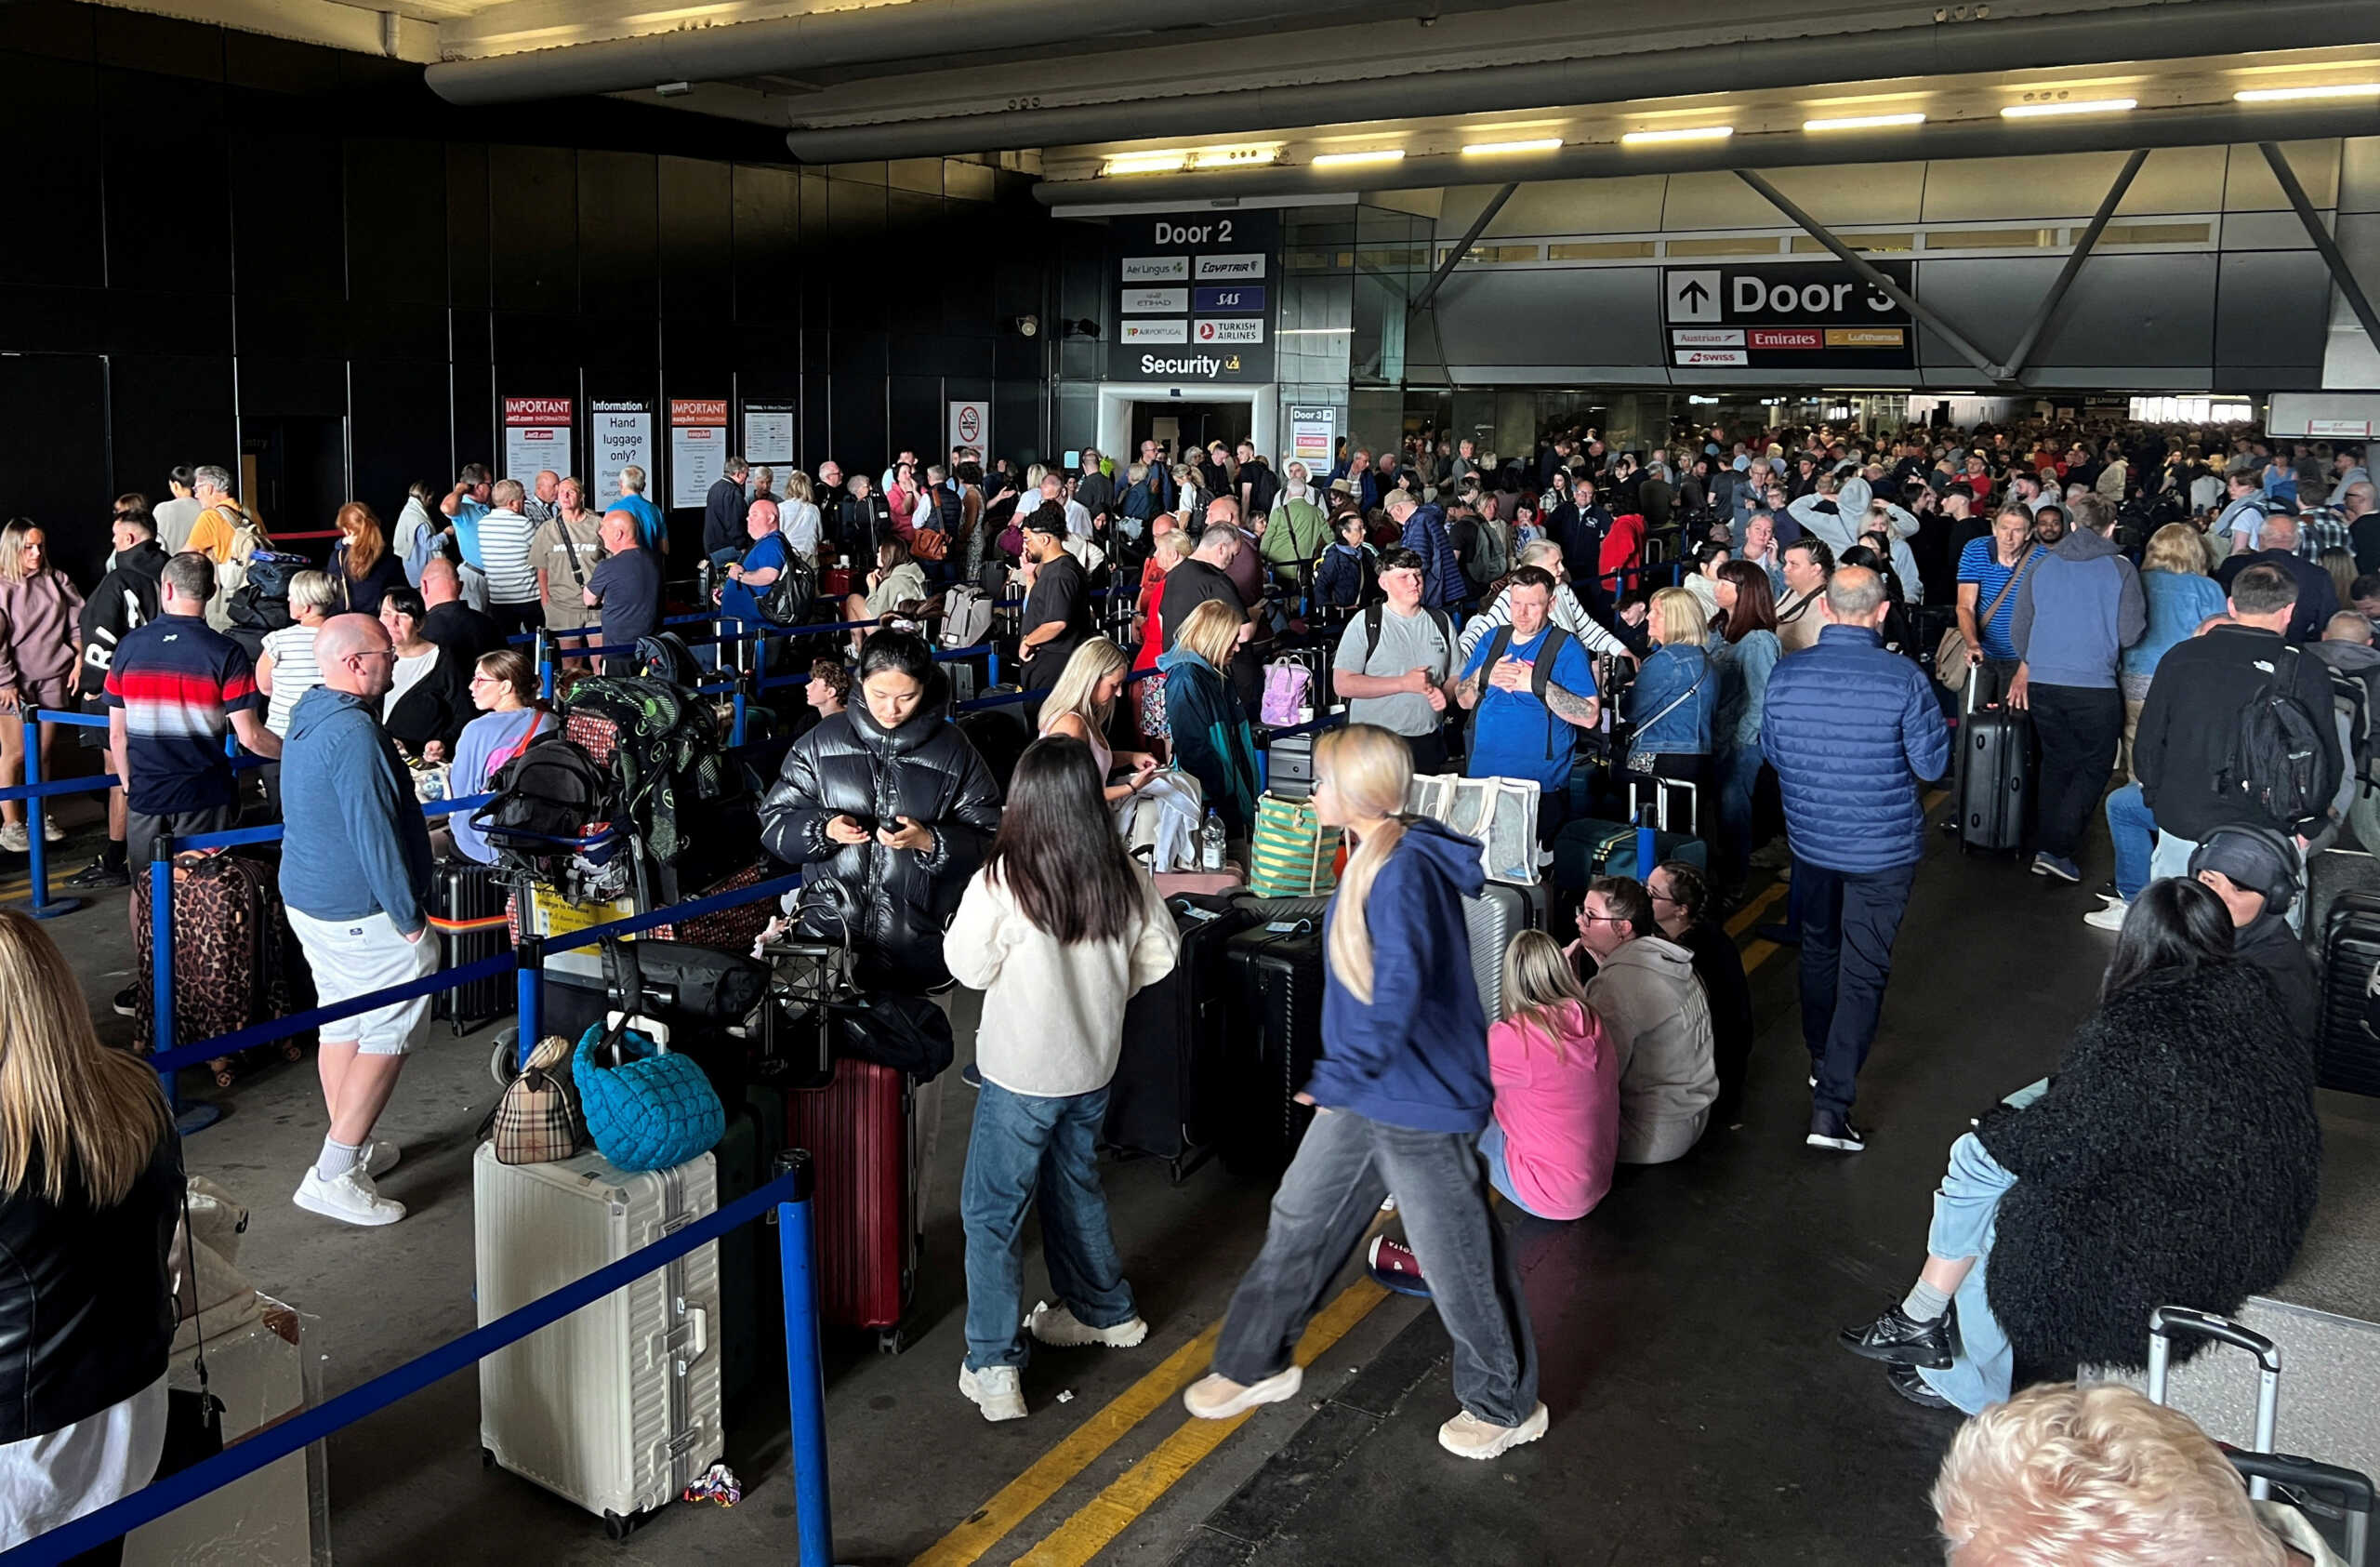 Επανέρχεται σταδιακά η λειτουργία στο αεροδρόμιο του Μάντσεστερ μετά από τη διακοπή ρεύματος